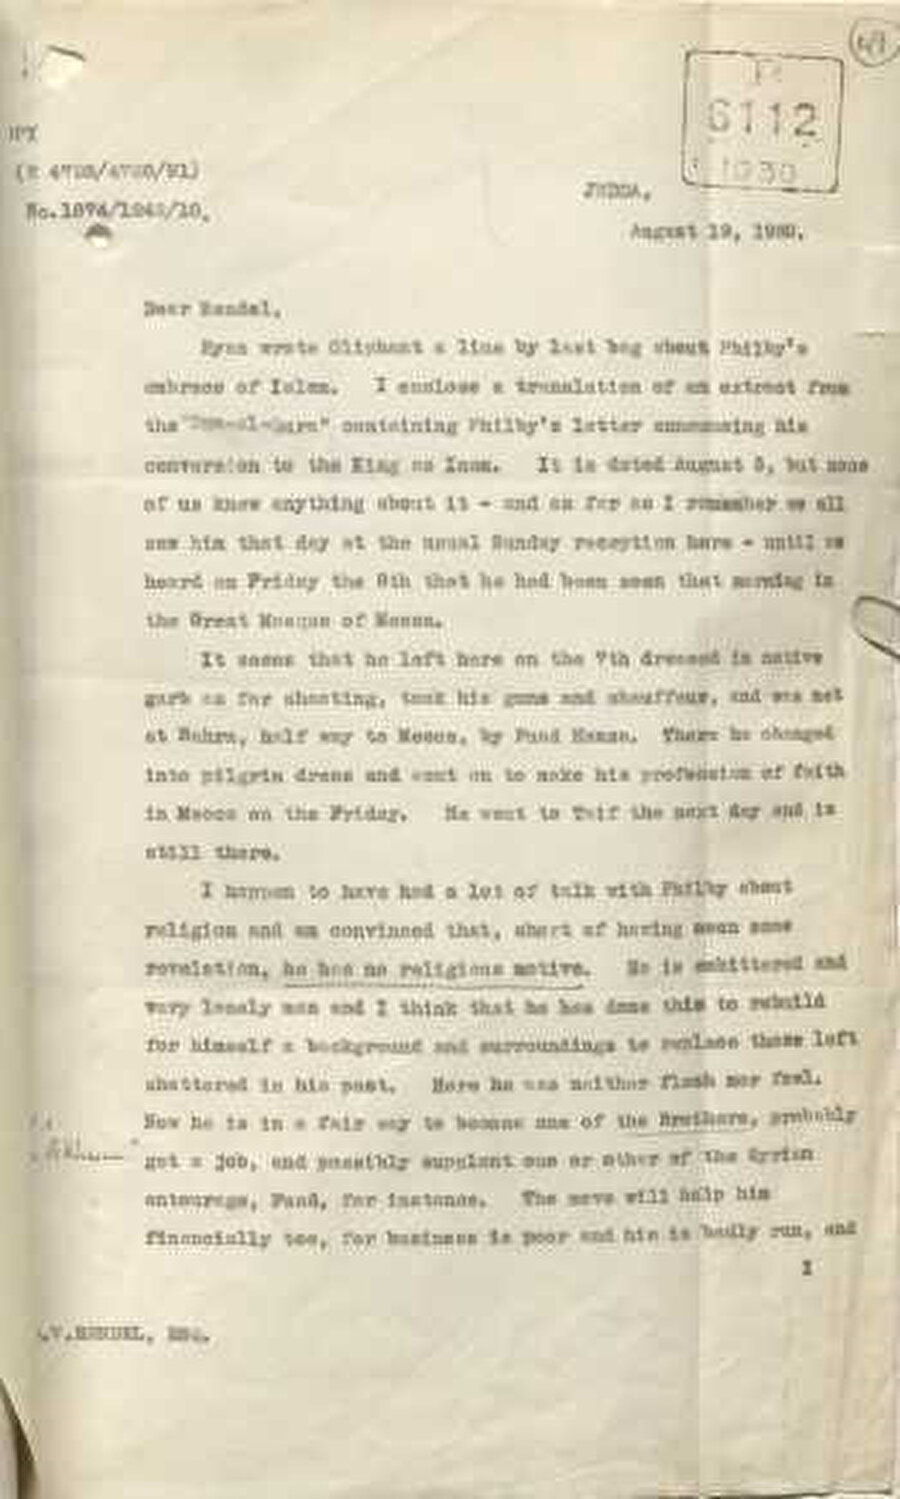 19 Ağustos 1930 tarihli Philby’nin Müslüman olmasıyla alakalı İngiltere Dışişleri Bakanlığı Doğu Ülkeleri Dairesi’nin başında bulunan George William Rendel’a gönderilen raporun ilk sayfası.